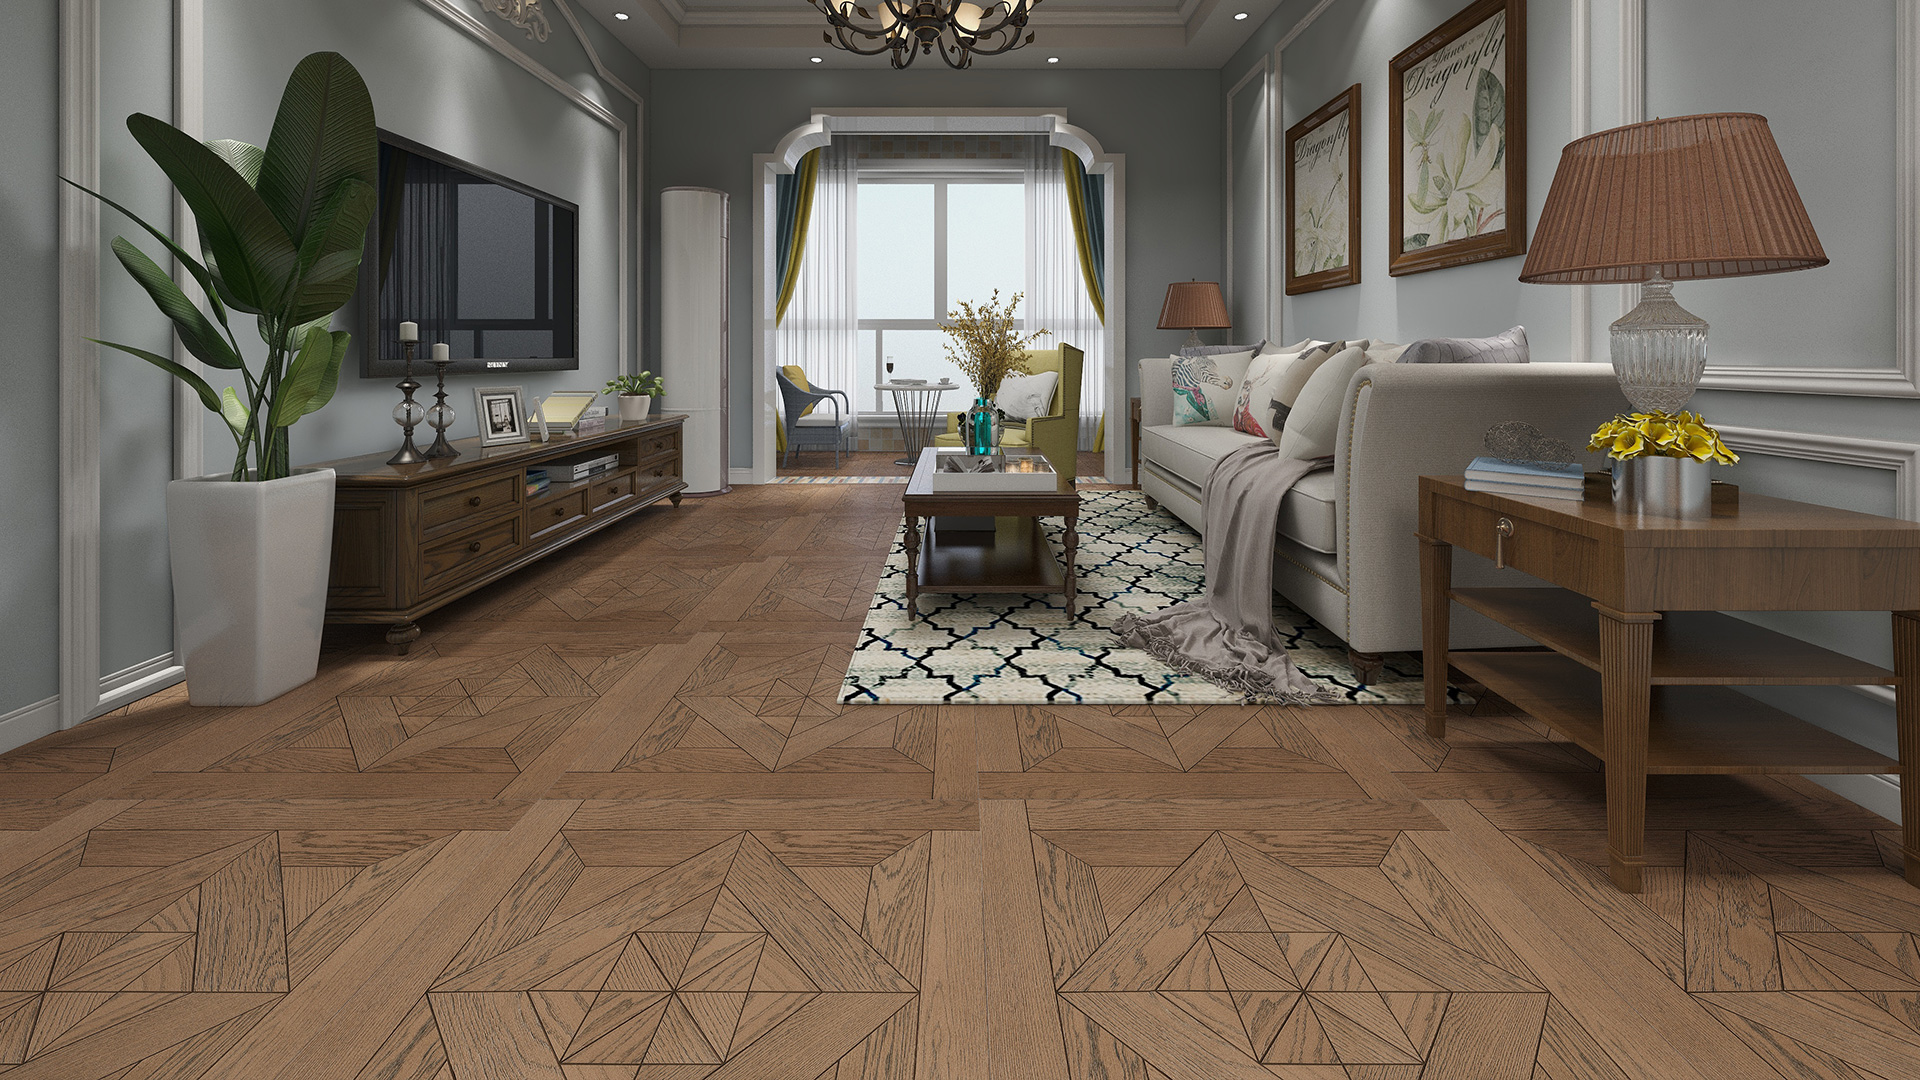 意大利garbelotto实木复合地板,玫瑰金色橡木澳式方拼,进口地板